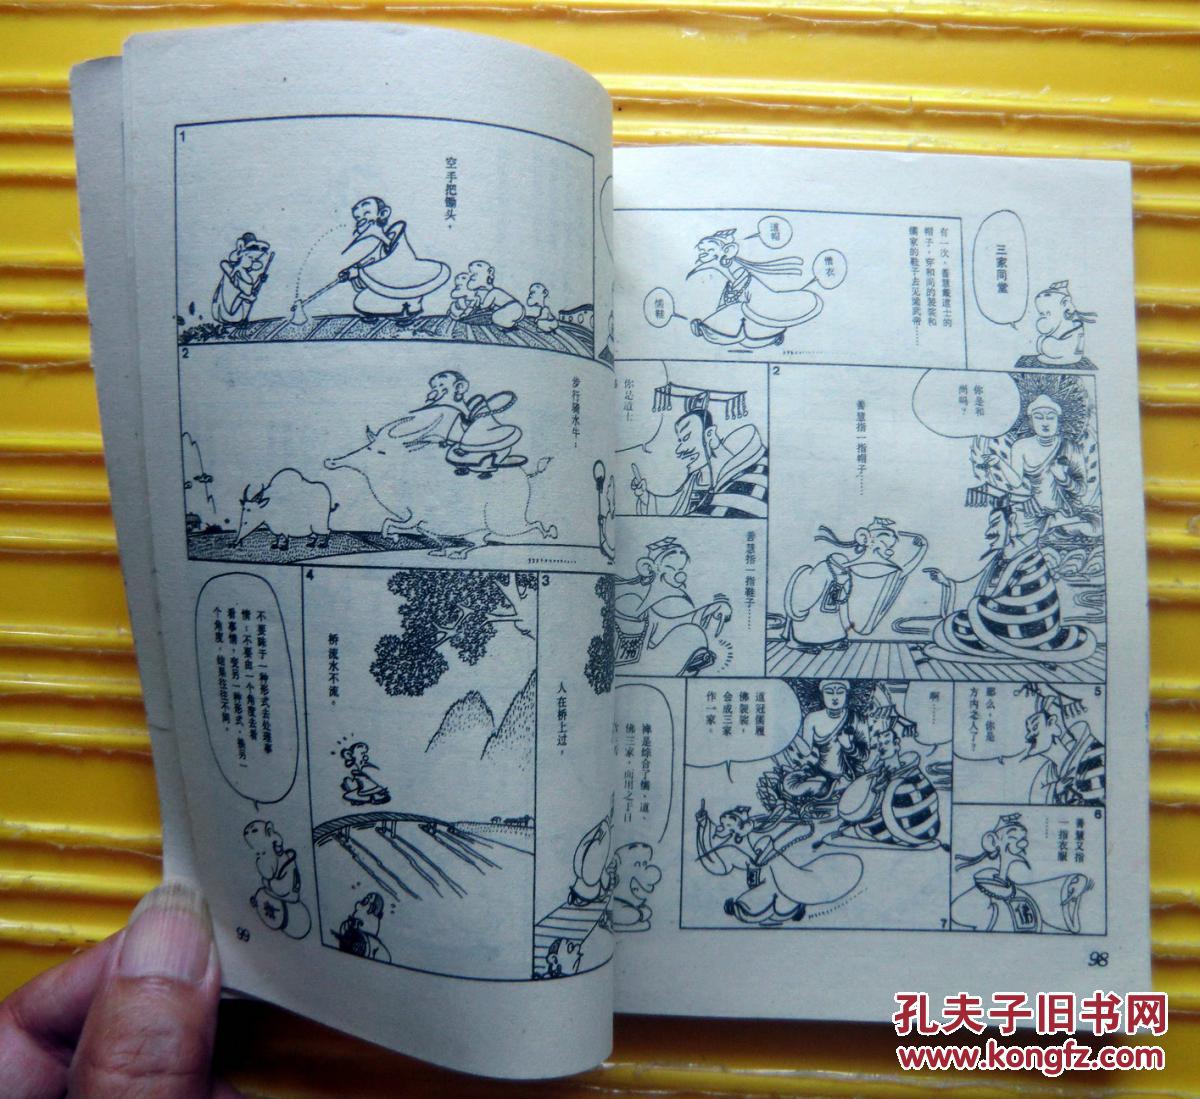 蔡志忠漫画《六祖坛经》（花间的细诉）1989年三联书店